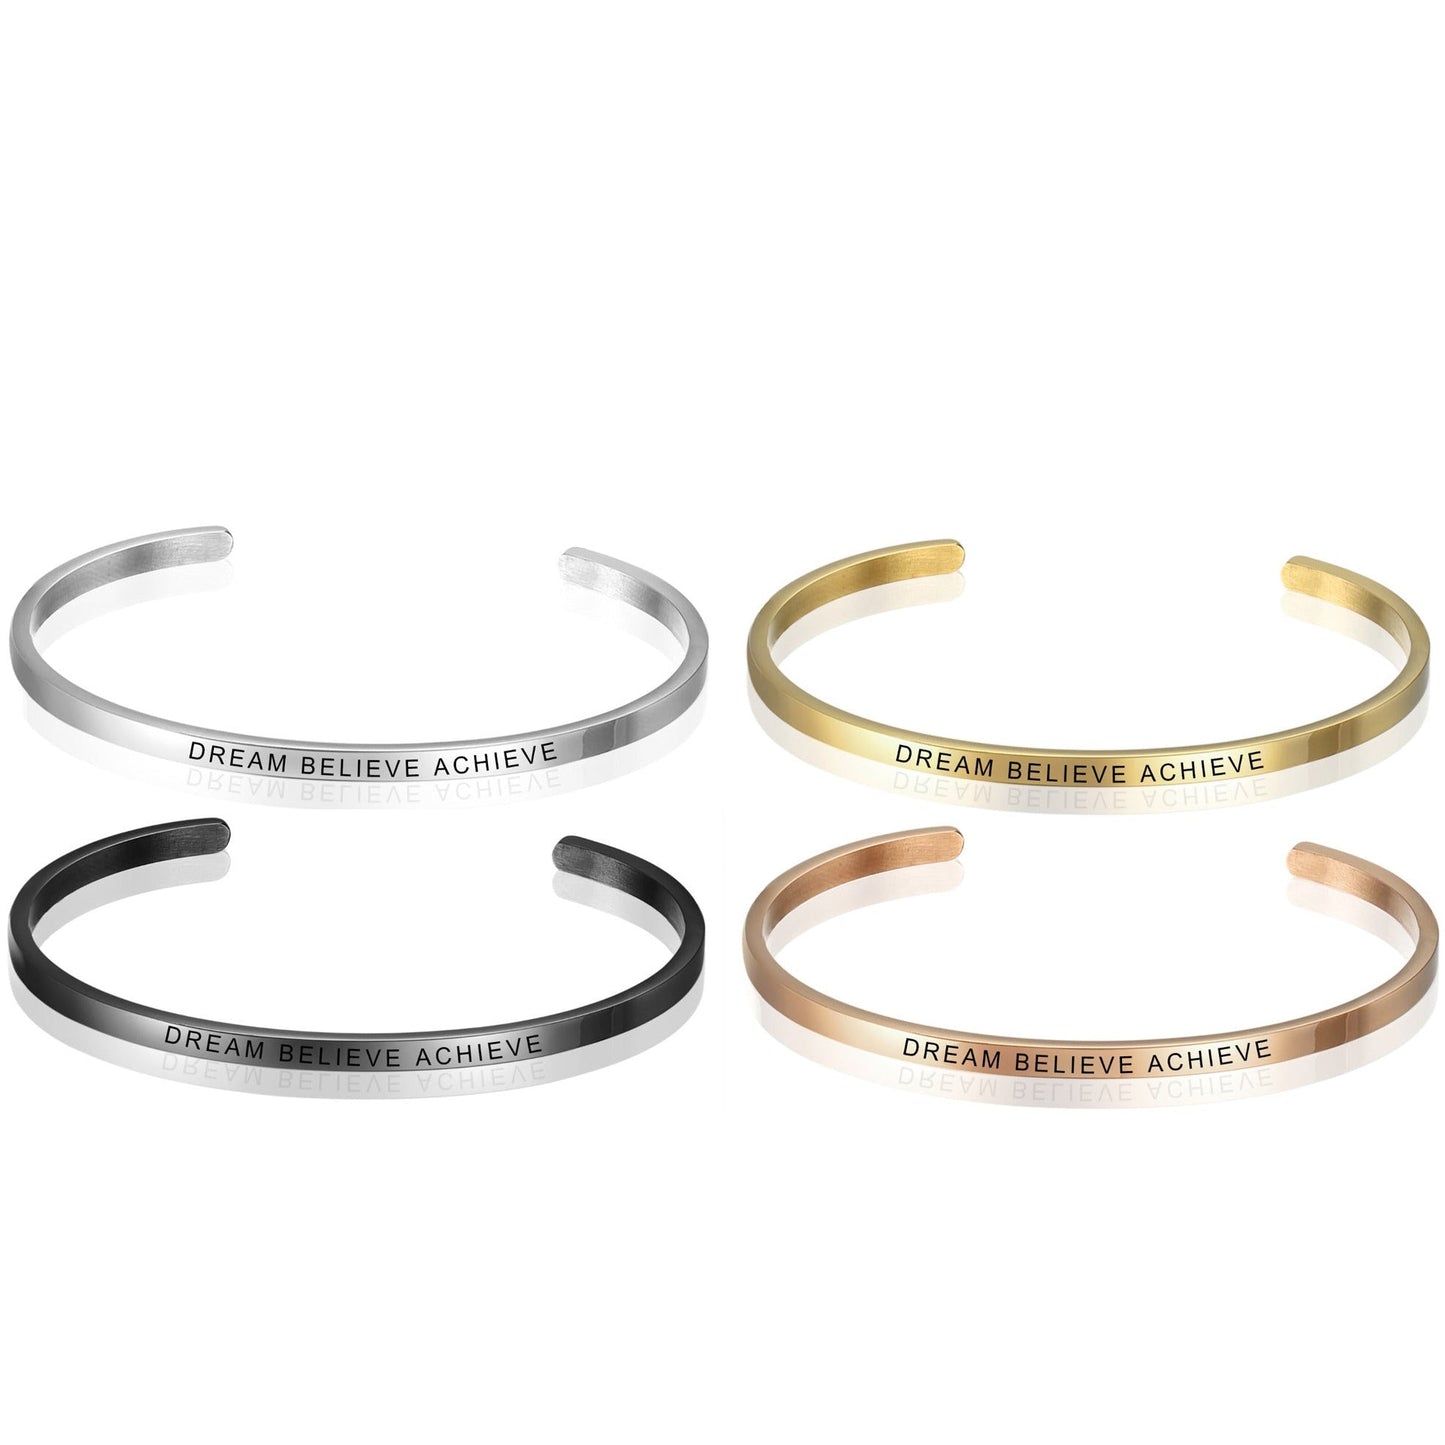 ThinkEngraved engraved bracelet Personalized Engraved Cuff Bar Bracelet - Silver, Black, Gold or Rose Gold